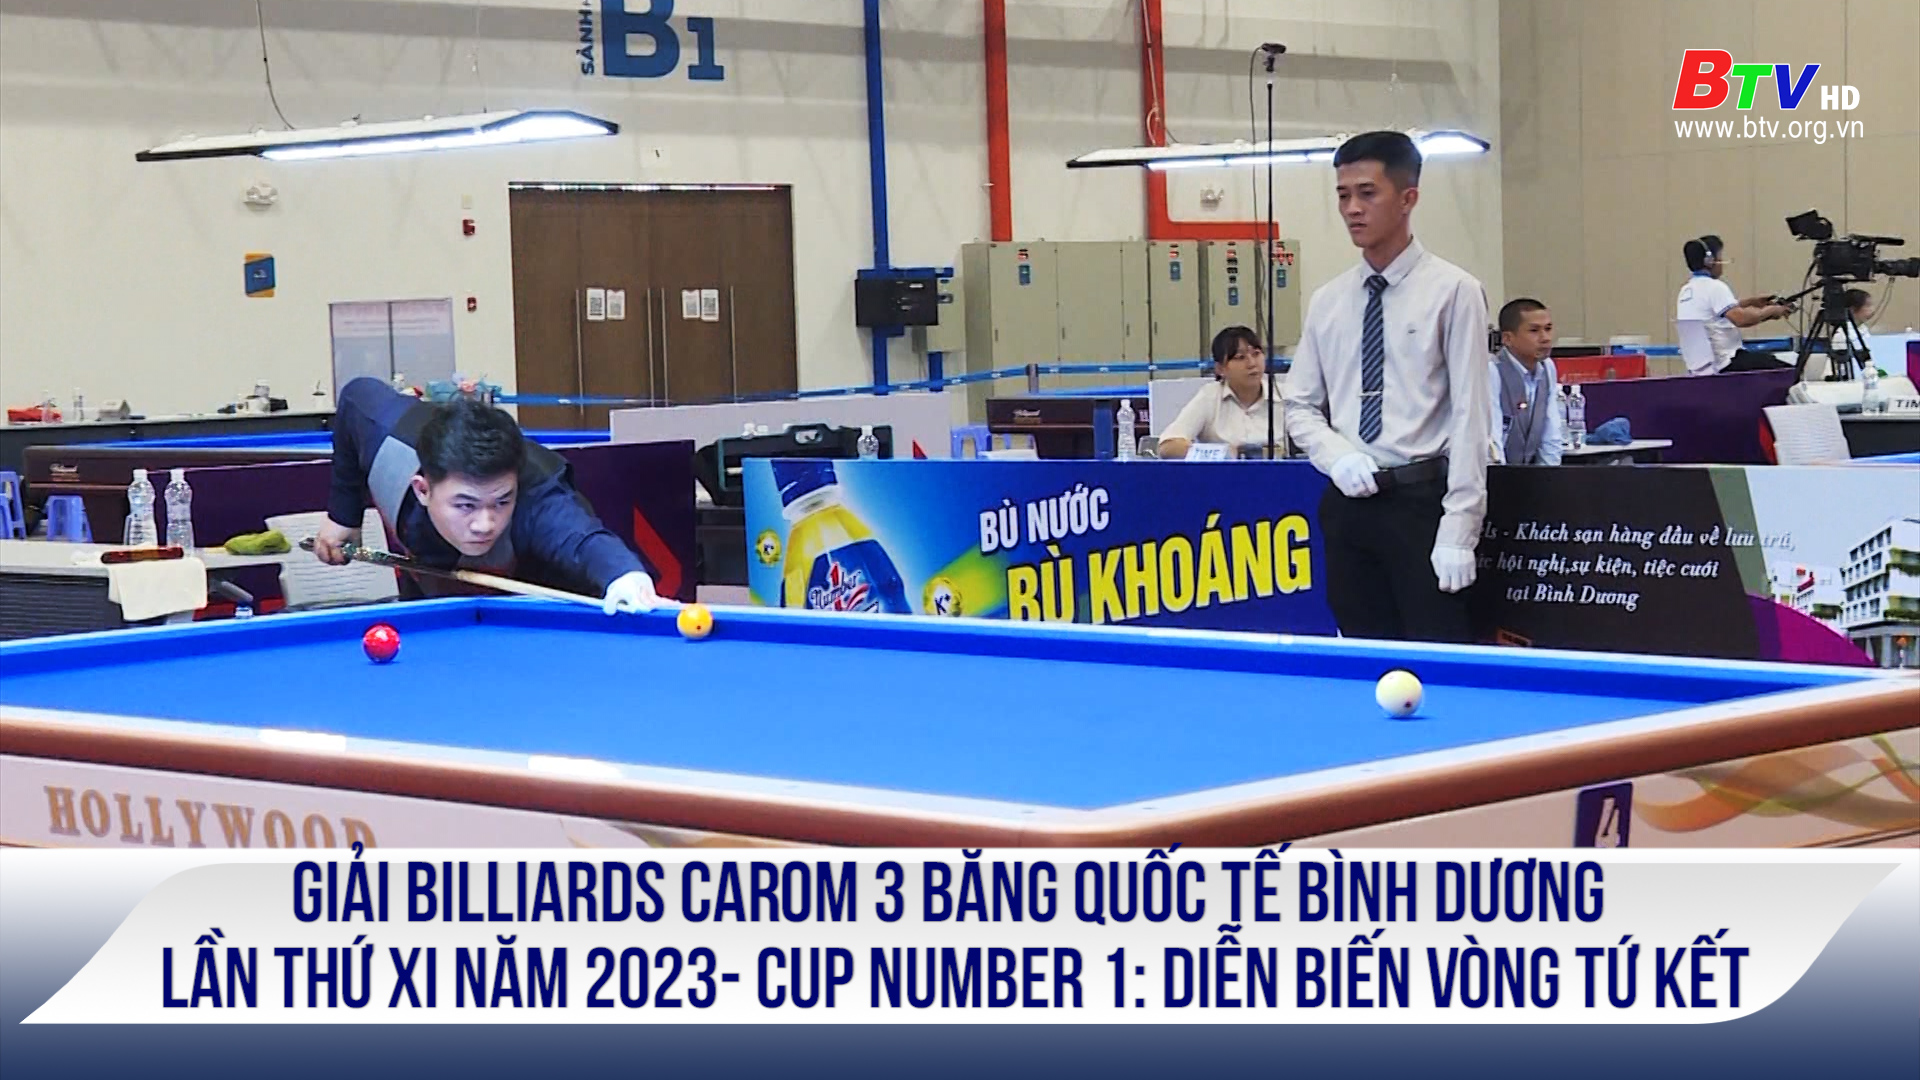 Giải Billiards carom 3 băng quốc tế Bình Dương lần thứ XI năm 2023- Cup Number 1: Diễn biến vòng tứ kết